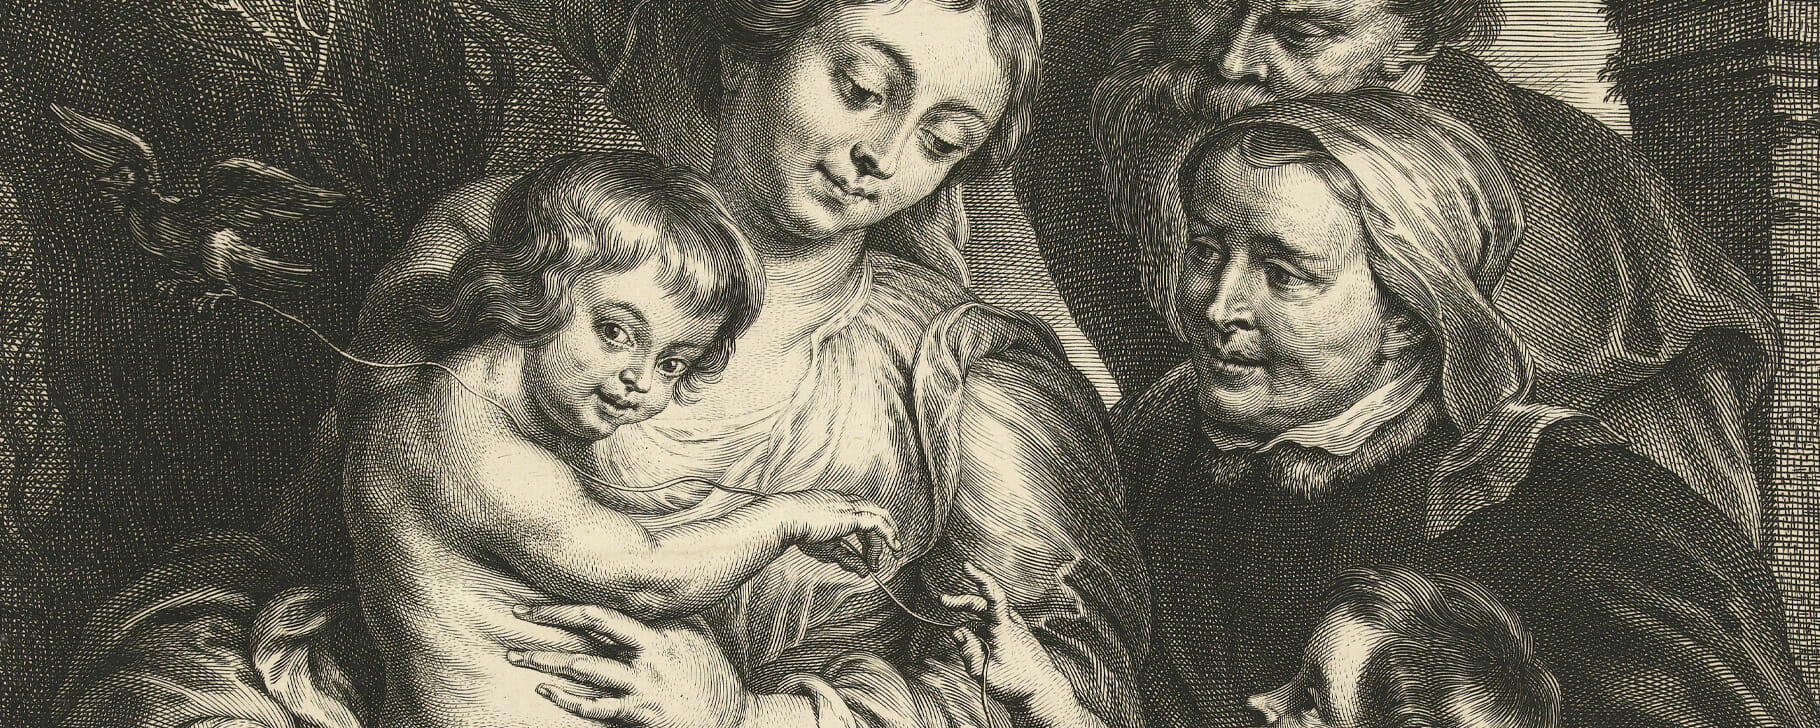 Rubens goldfinch engraving